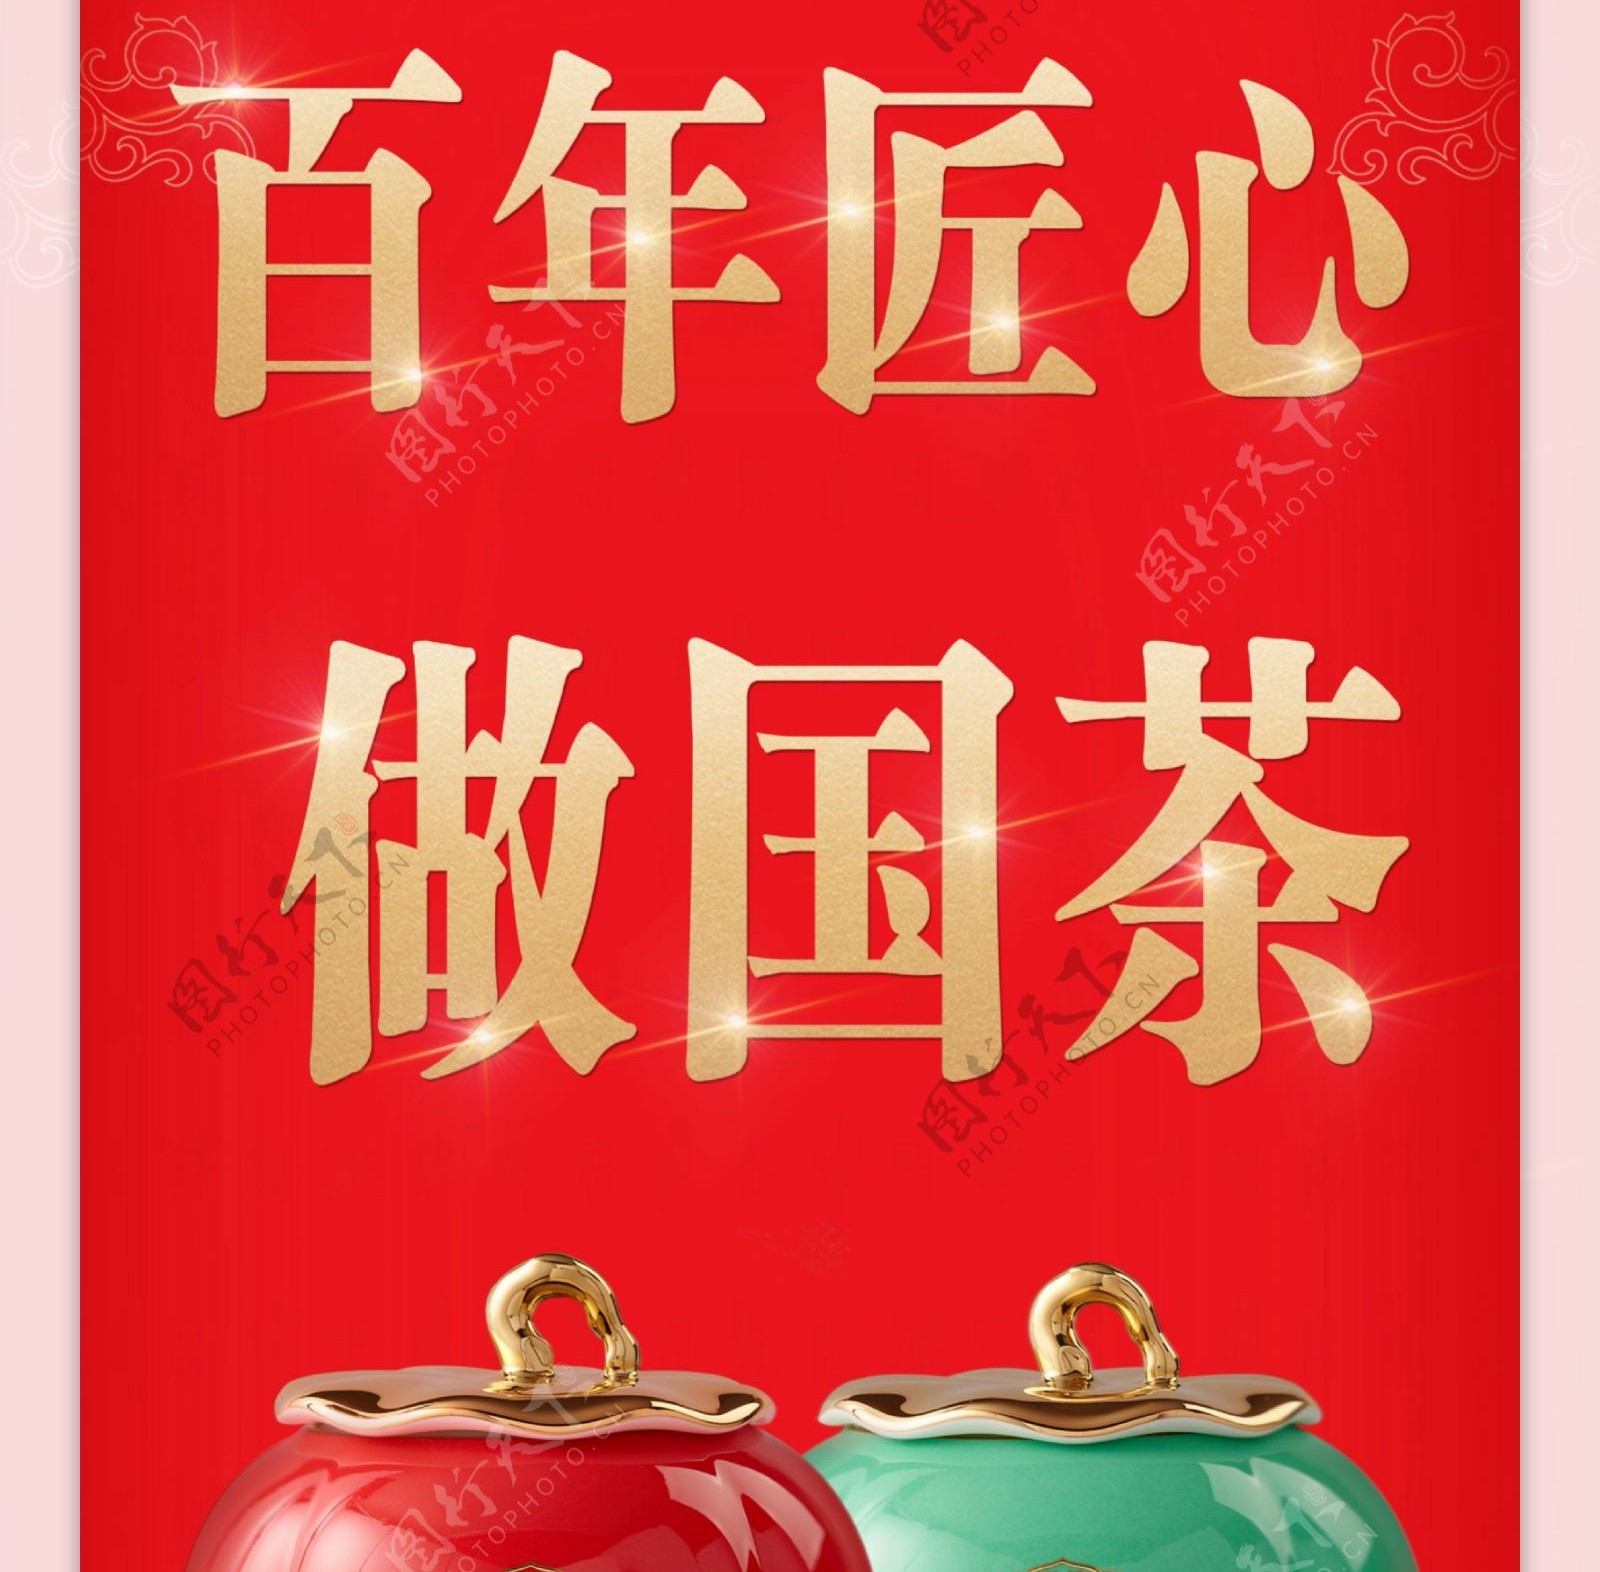 八马茶业宣传海报